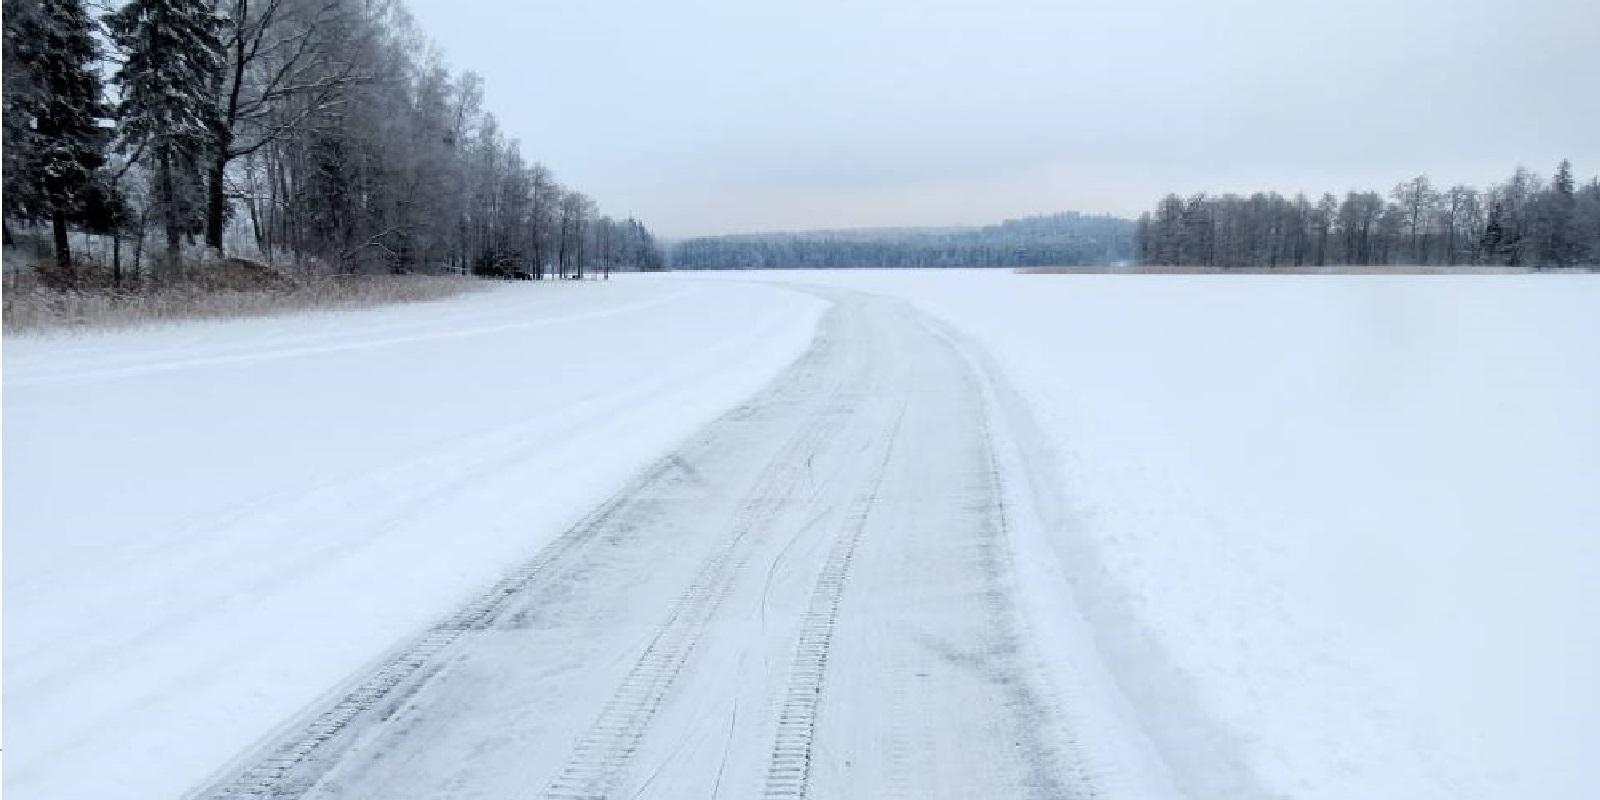 Skating trip in Otepää, on Lake Pühajärv